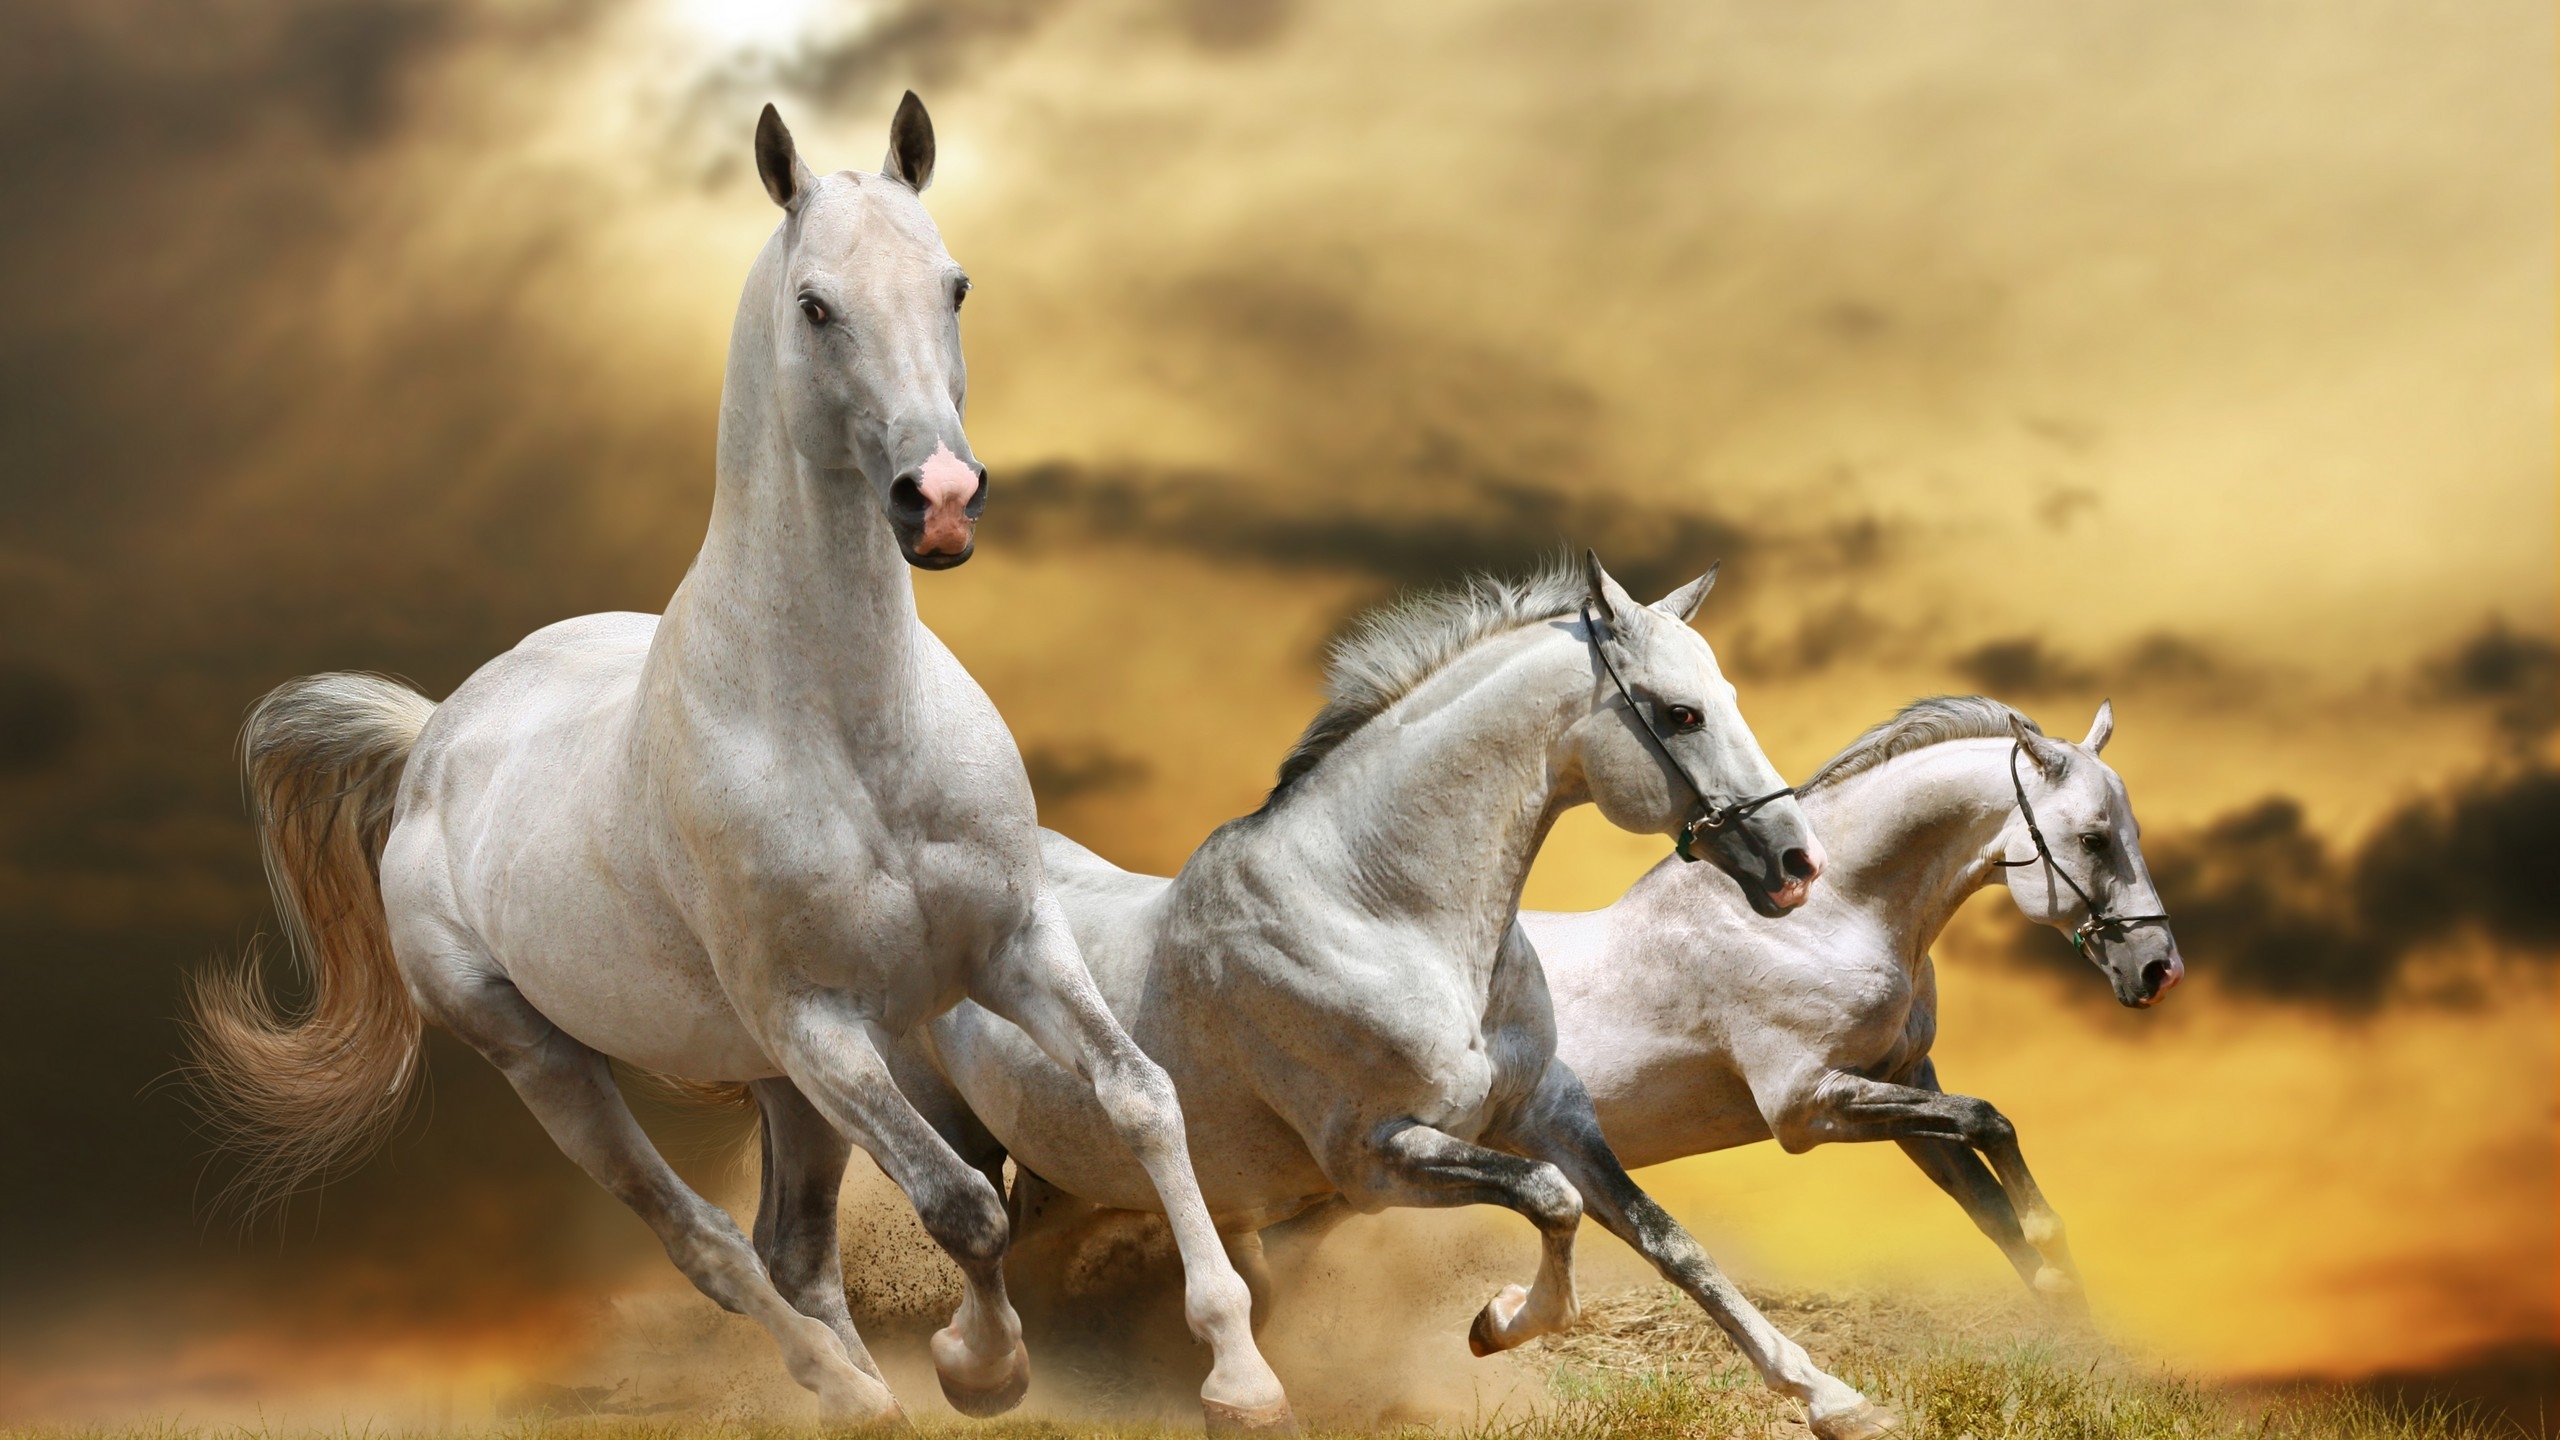 Wilde White Horses for 2560x1440 HDTV resolution